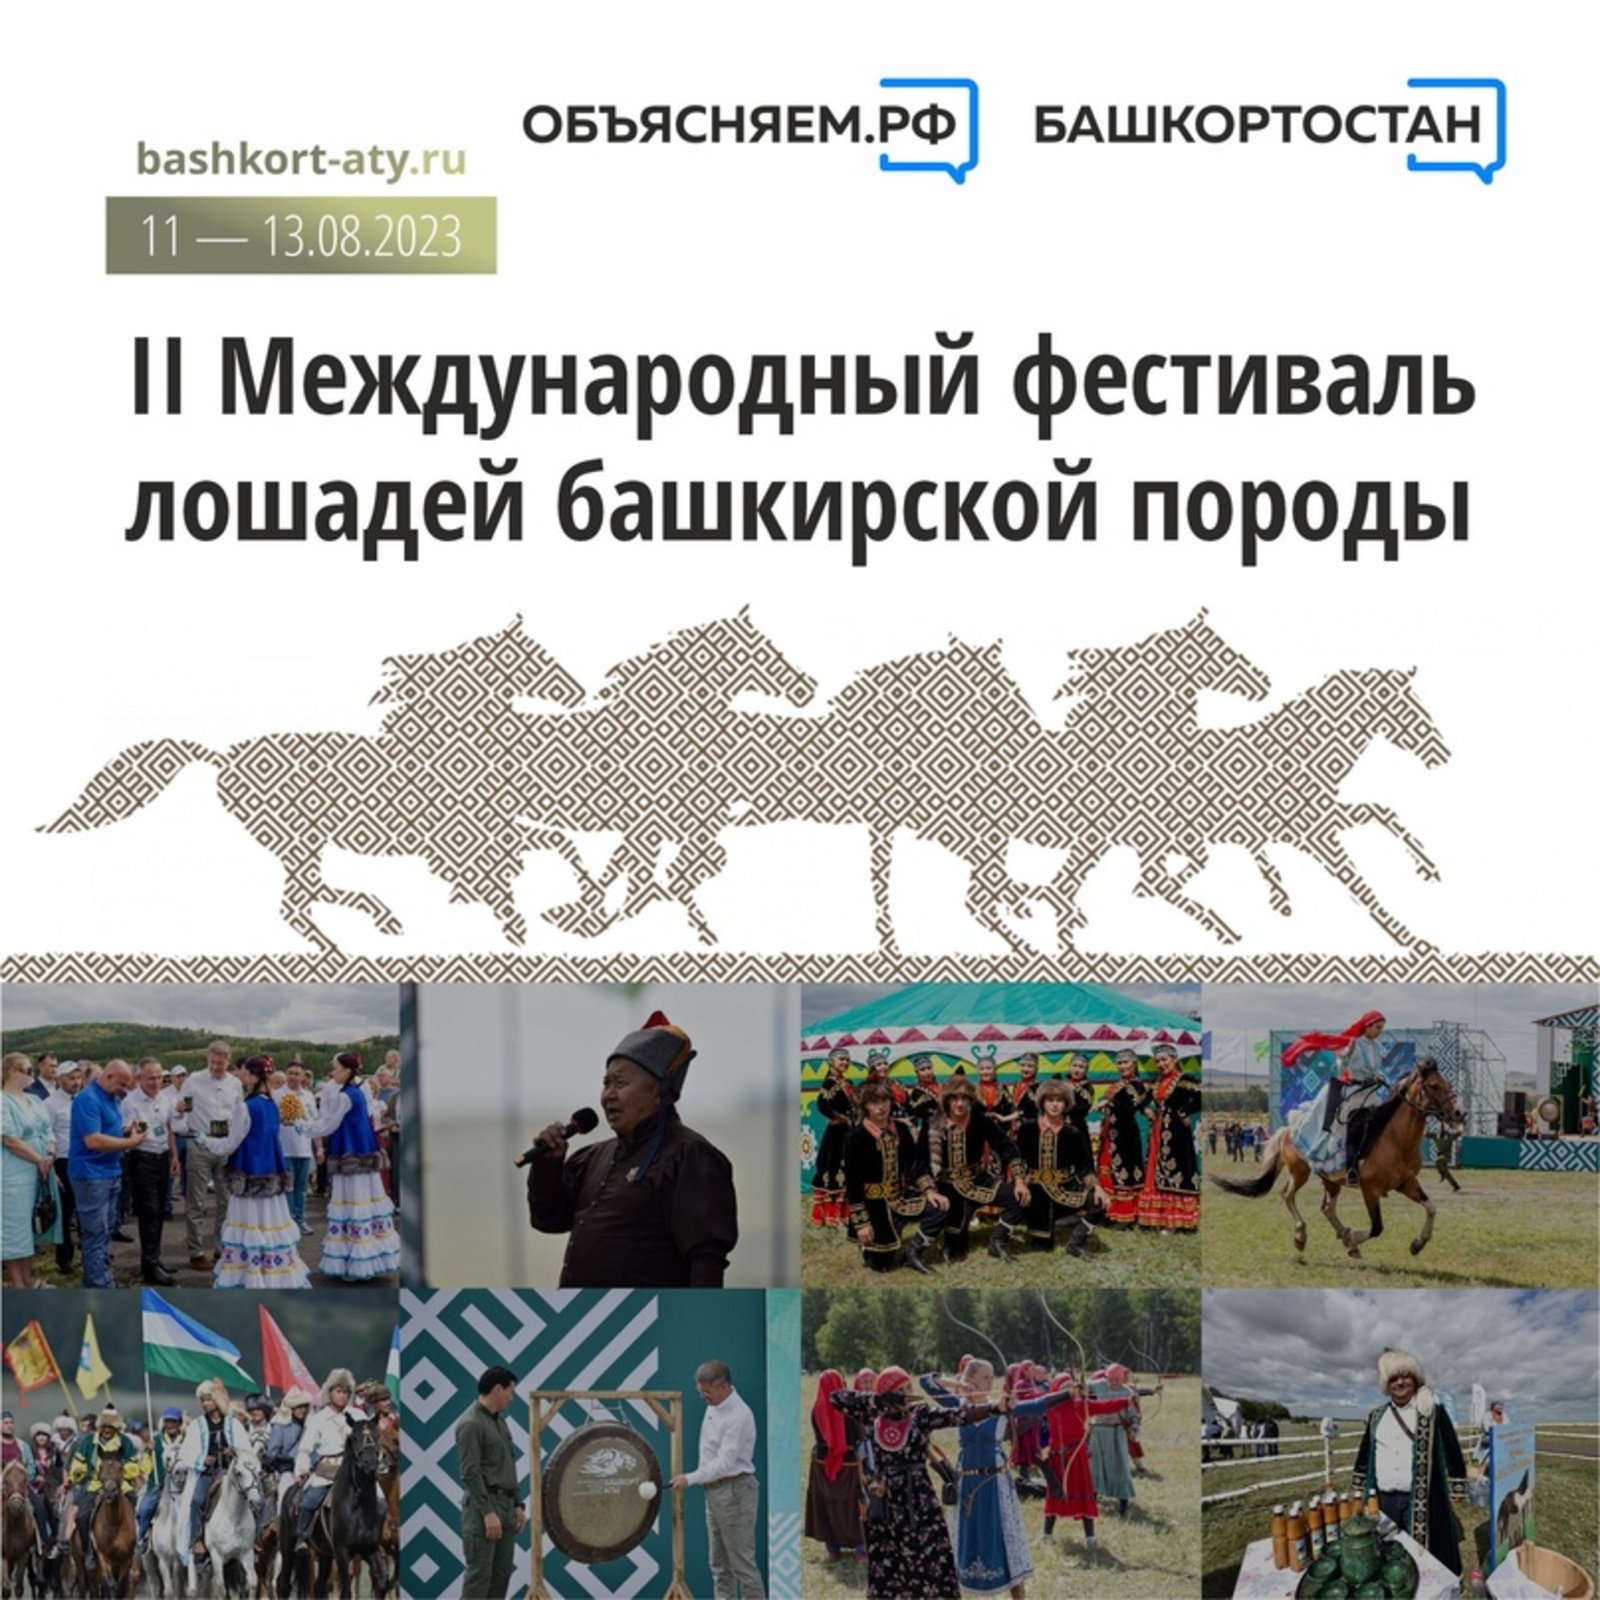 Республиканский фестиваль лошадей башкирской породы «Башҡорт аты» пройдет 11 - 13 августа 2023 года в Баймакском районе